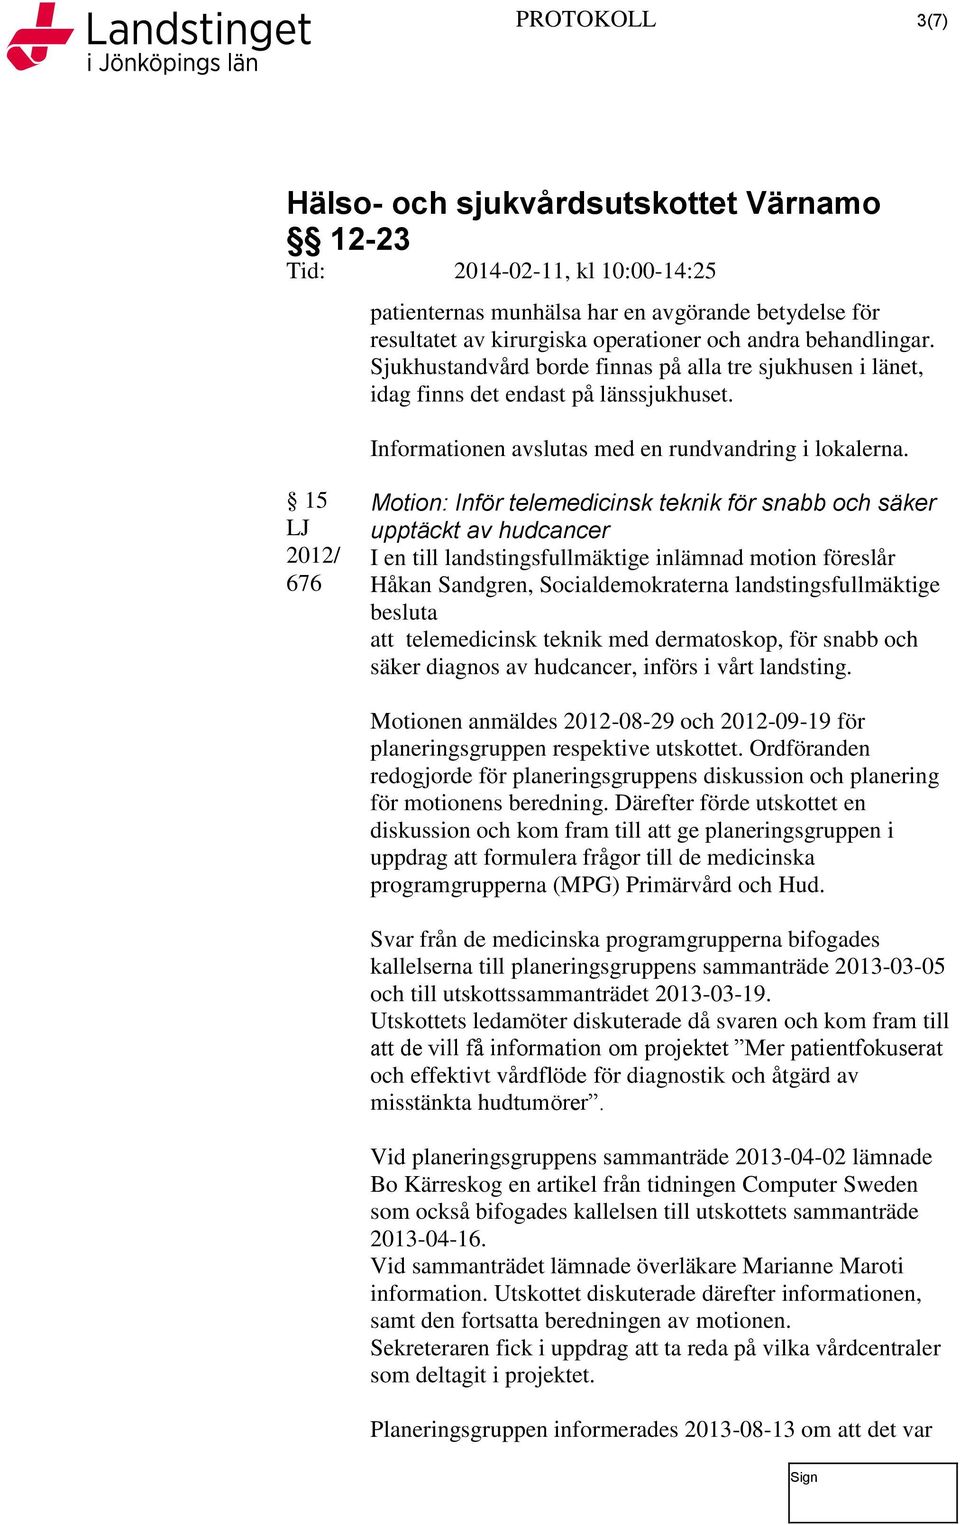 15 LJ 2012/ 676 Motion: Inför telemedicinsk teknik för snabb och säker upptäckt av hudcancer I en till landstingsfullmäktige inlämnad motion föreslår Håkan Sandgren, Socialdemokraterna